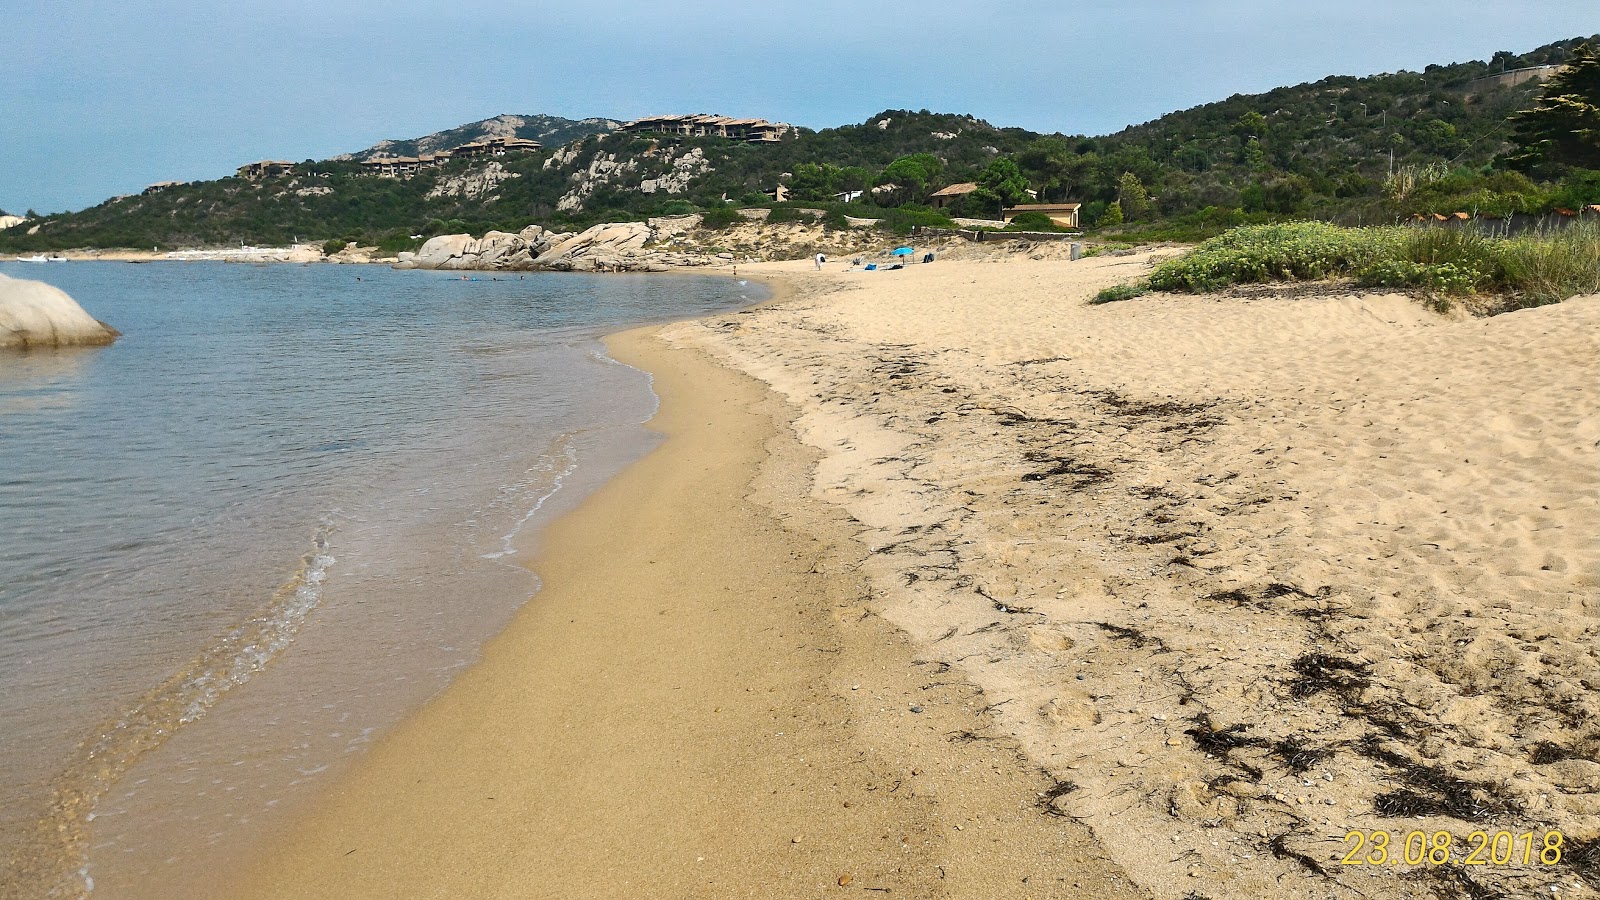 Photo of Spiaggia Su Sarrale II and its beautiful scenery